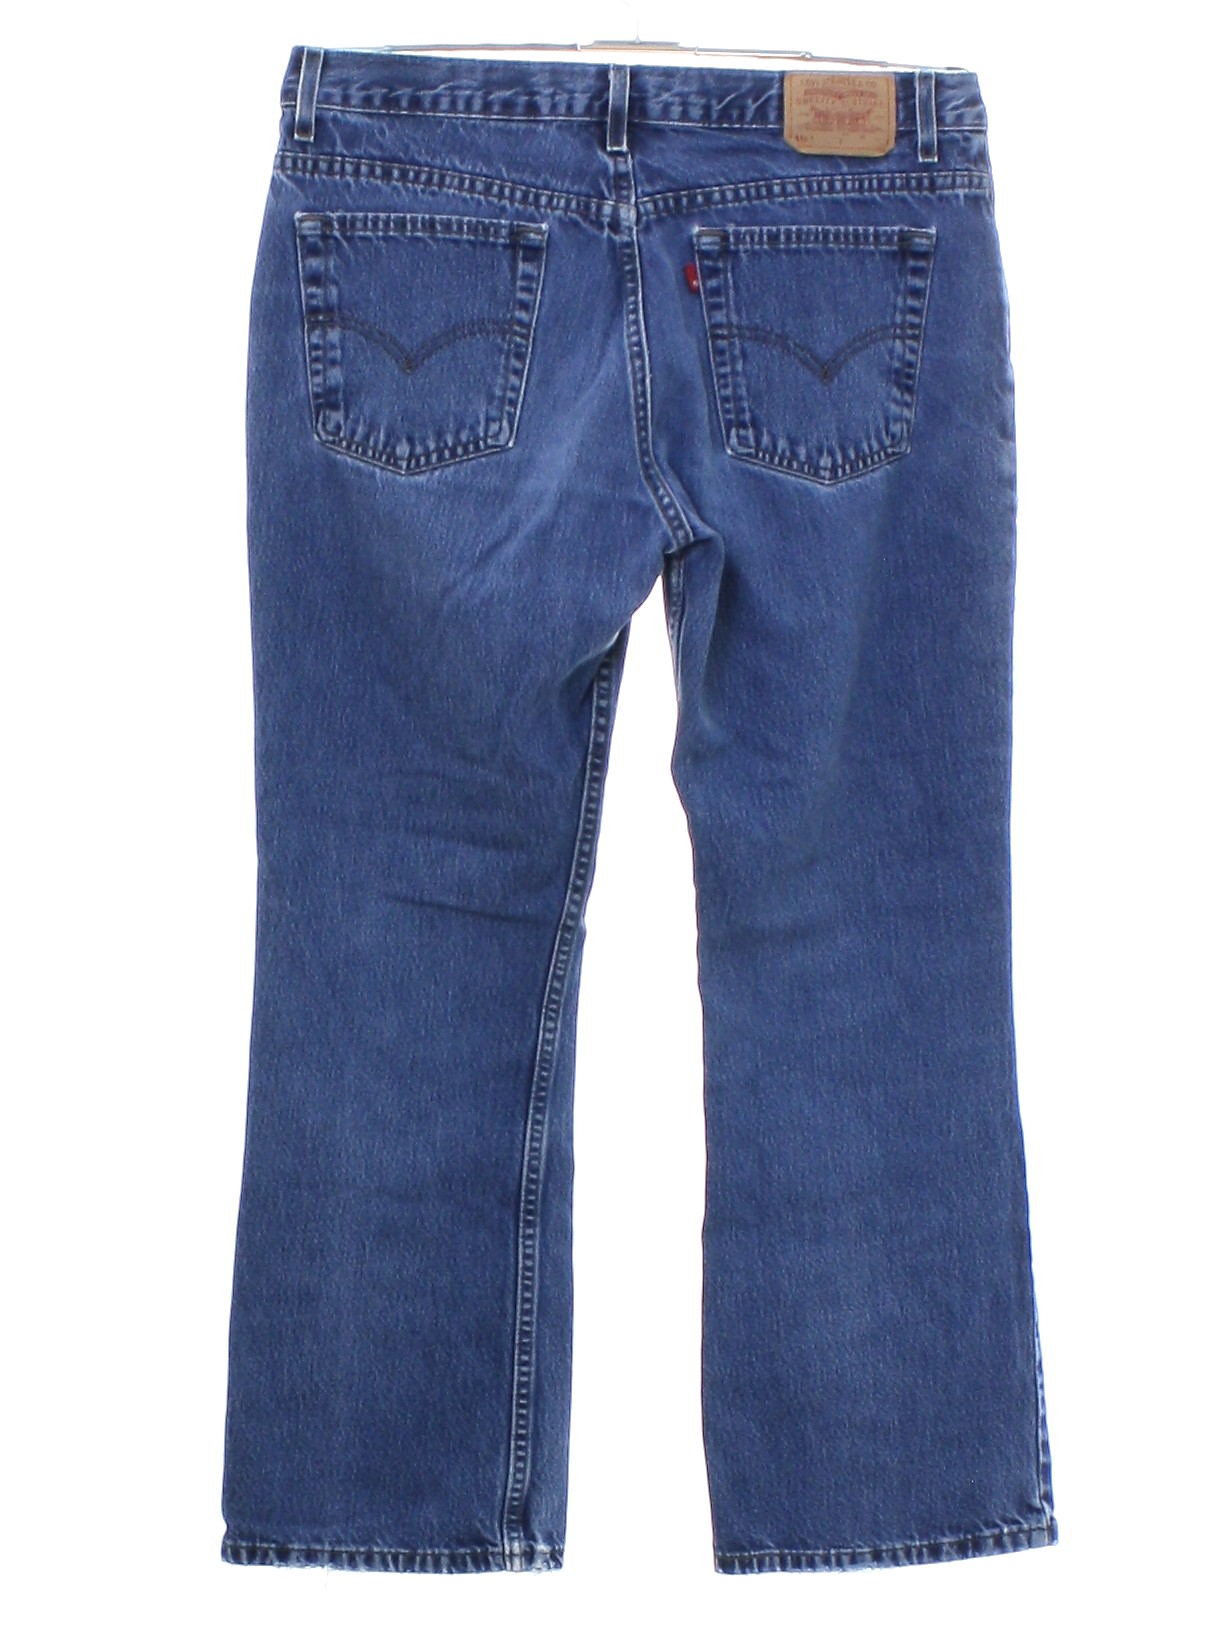 levis 515 womens jeans